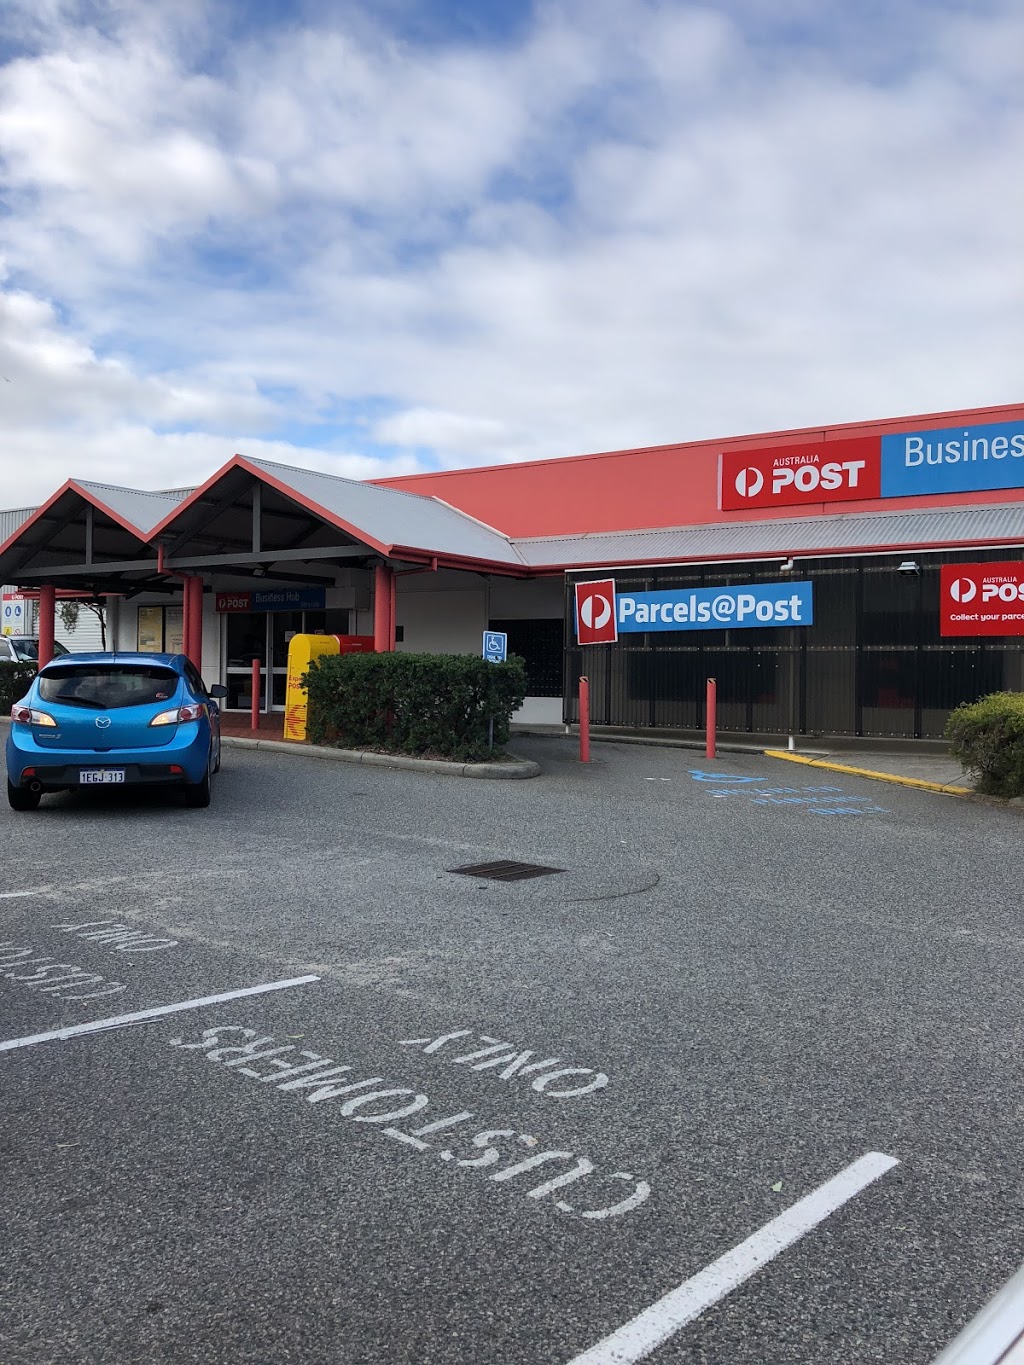 Australia Post - Bibra Lake Business Hub | post office | 21-23 Port Pirie St, Bibra Lake WA 6163, Australia | 131318 OR +61 131318